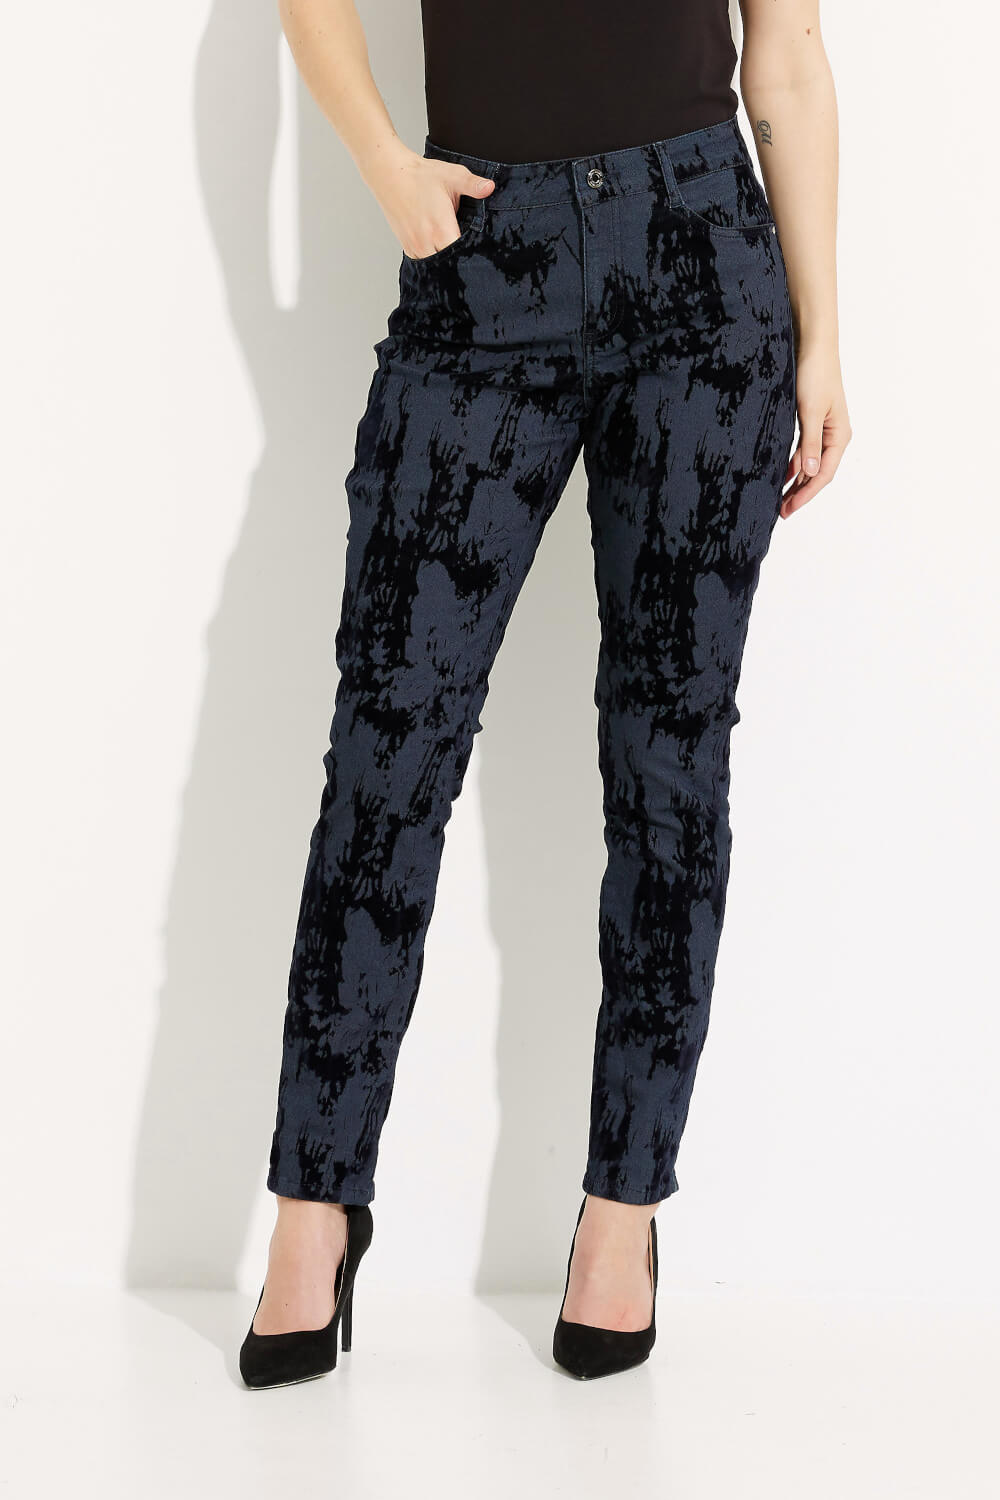 Printed Detail Pants Style 233918. Dark Blue